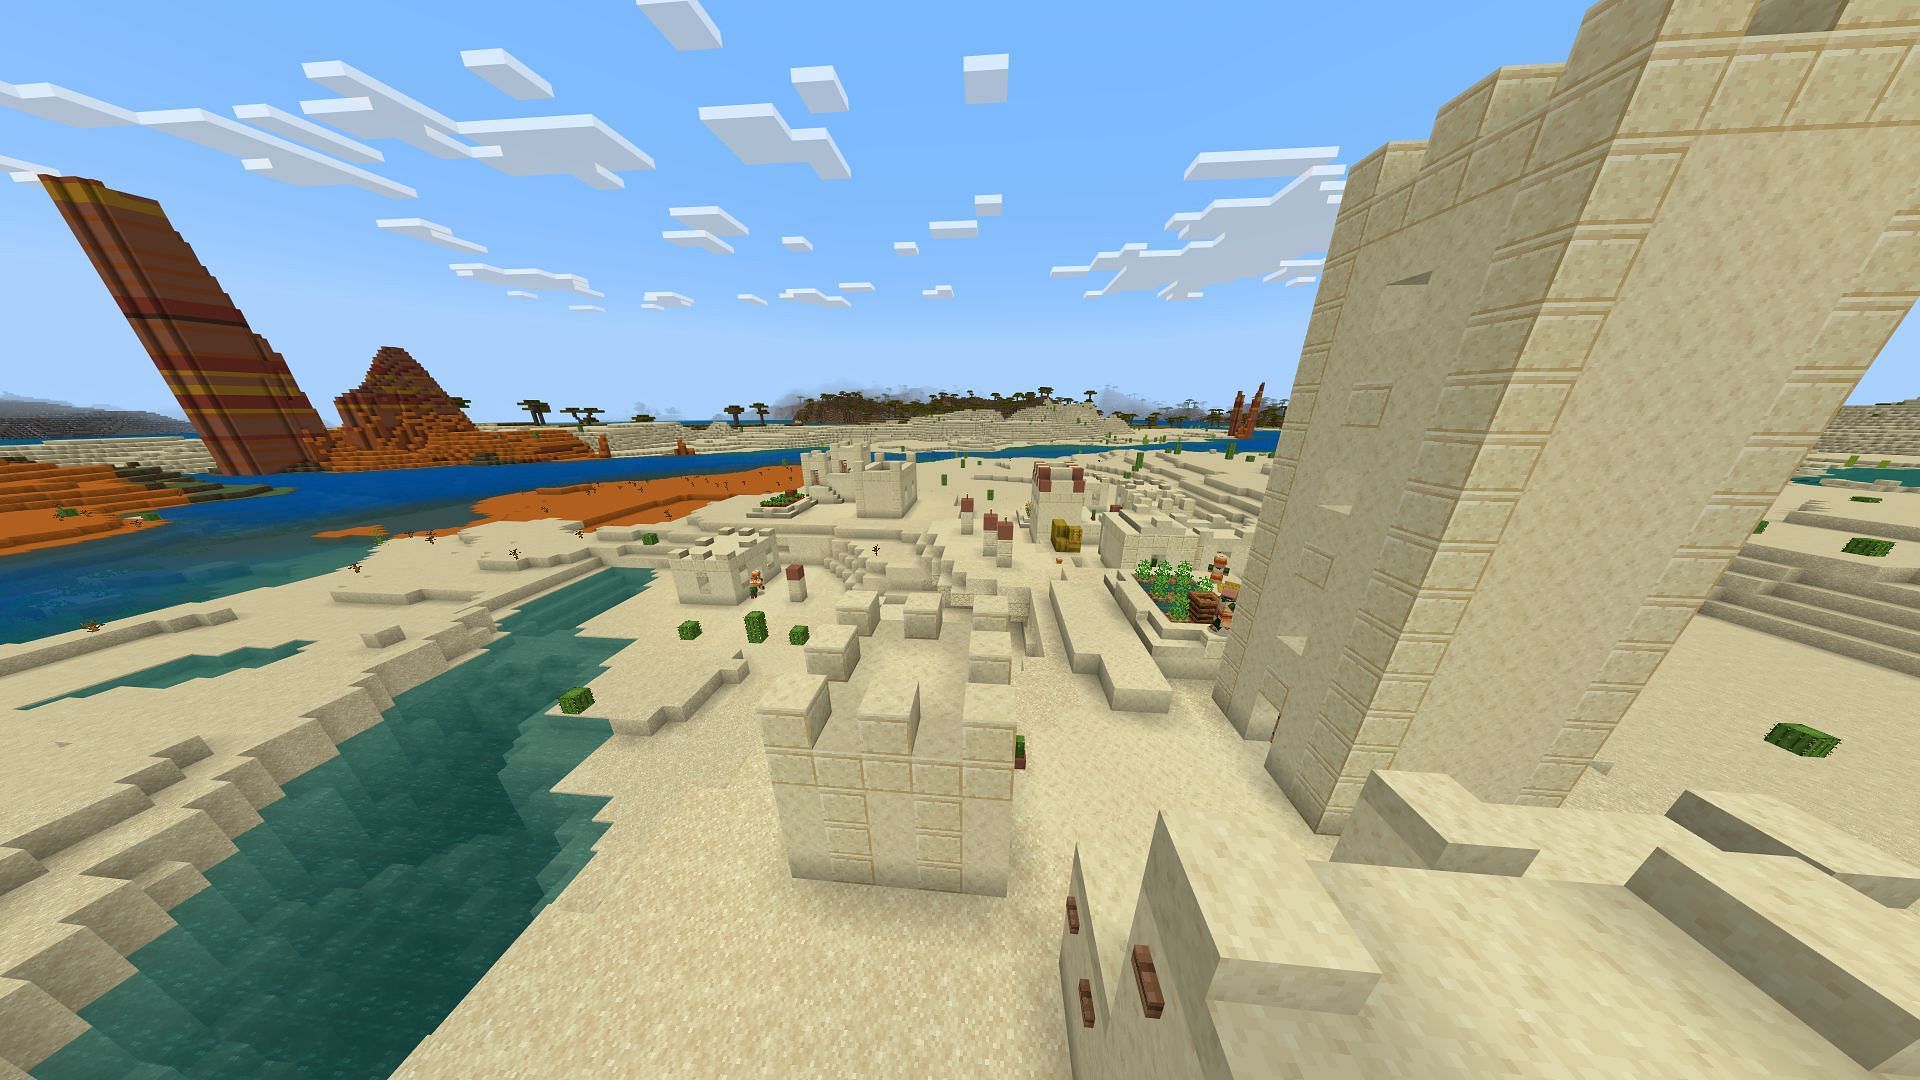 Деревня с пустынным колодцем - это только начало в этом сиде Minecraft (Изображение взято с Mojang)